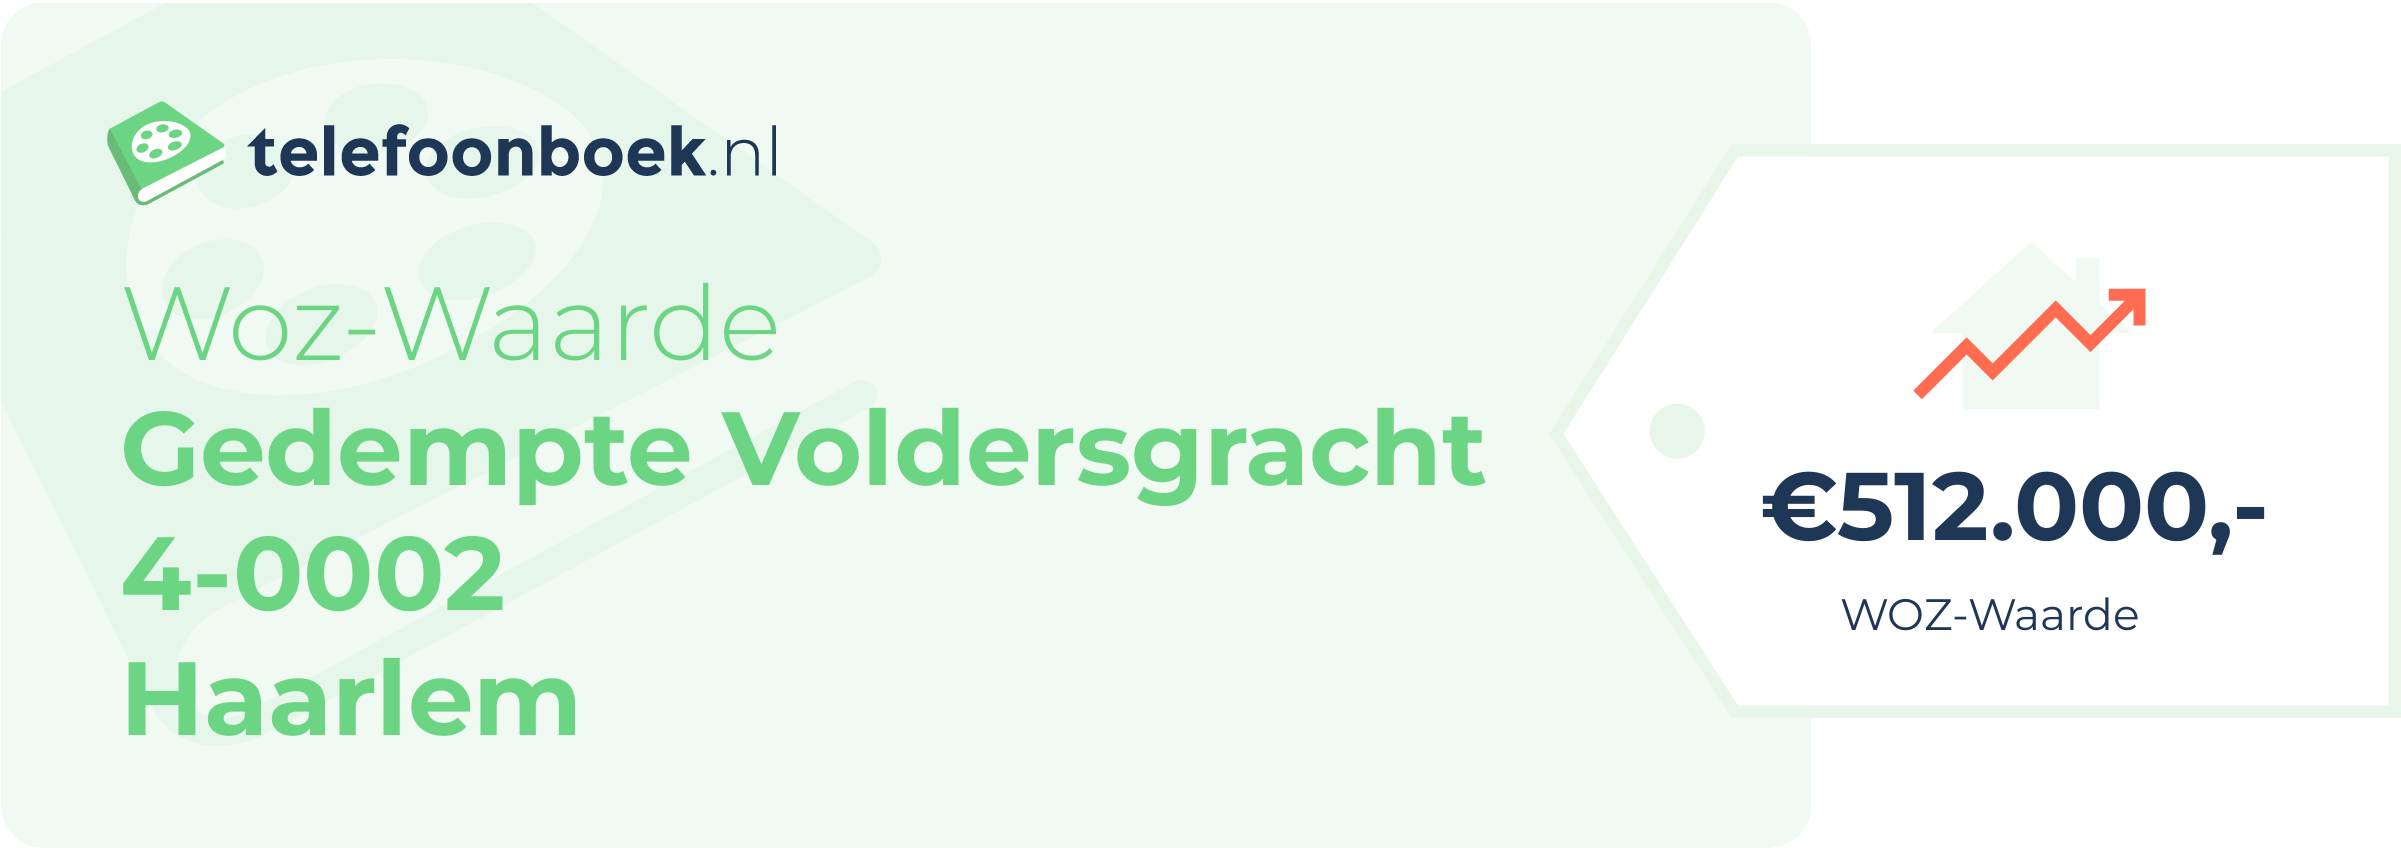 WOZ-waarde Gedempte Voldersgracht 4-0002 Haarlem